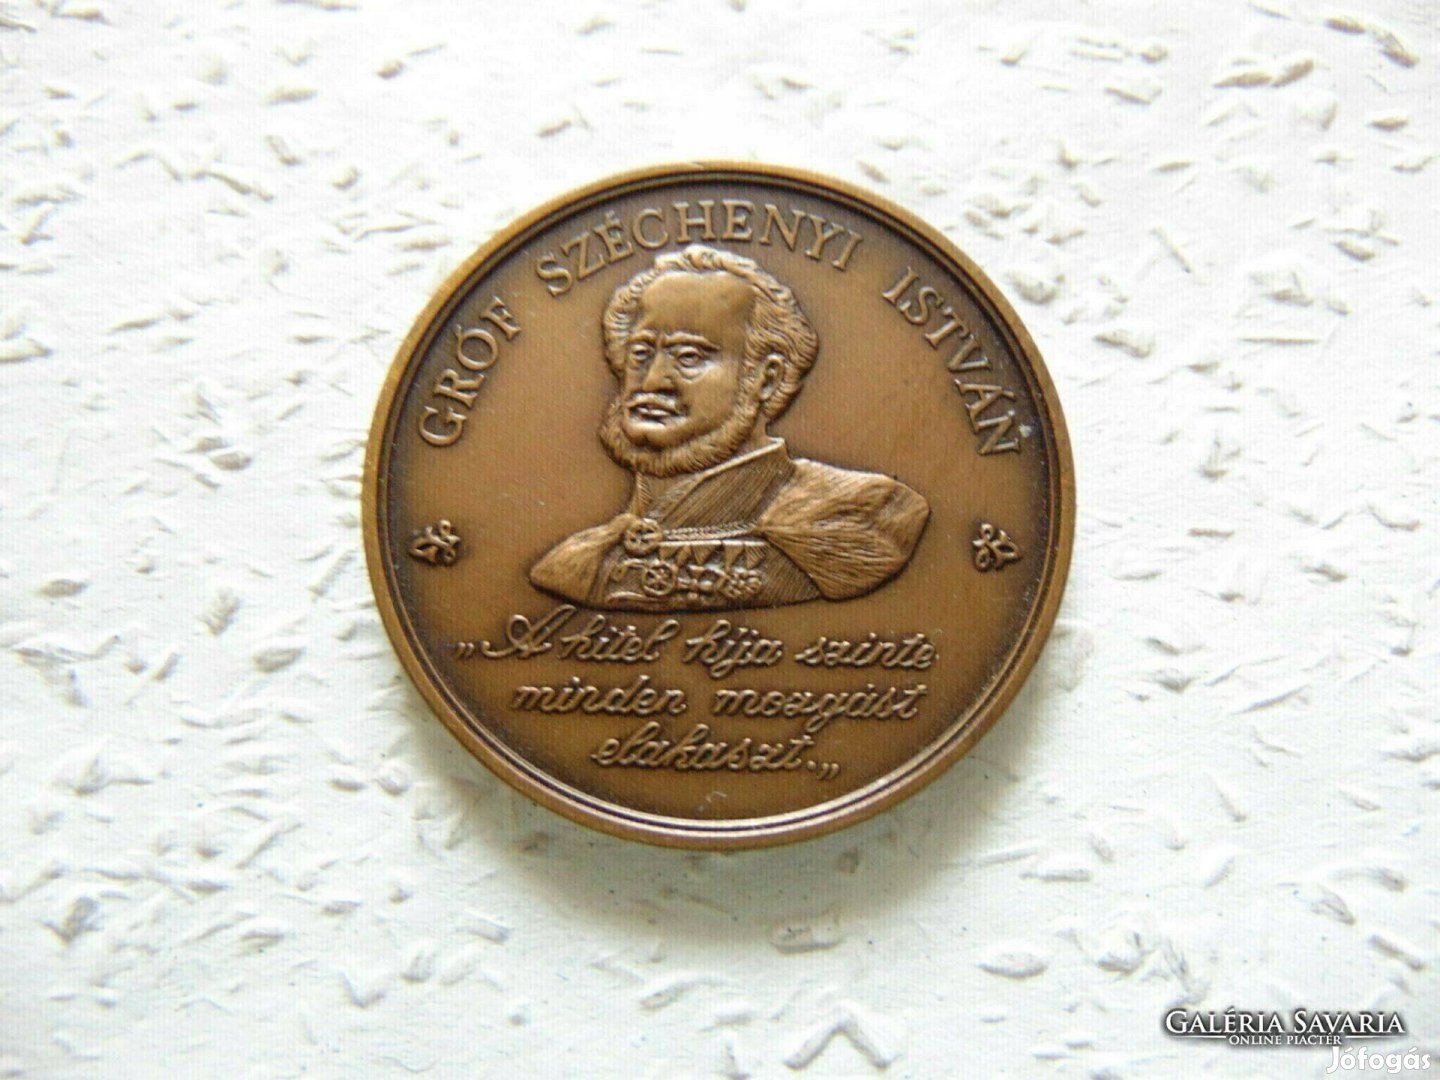 Gróf Széchenyi István bronz emlékérem 1989 Súly 29.80 gramm